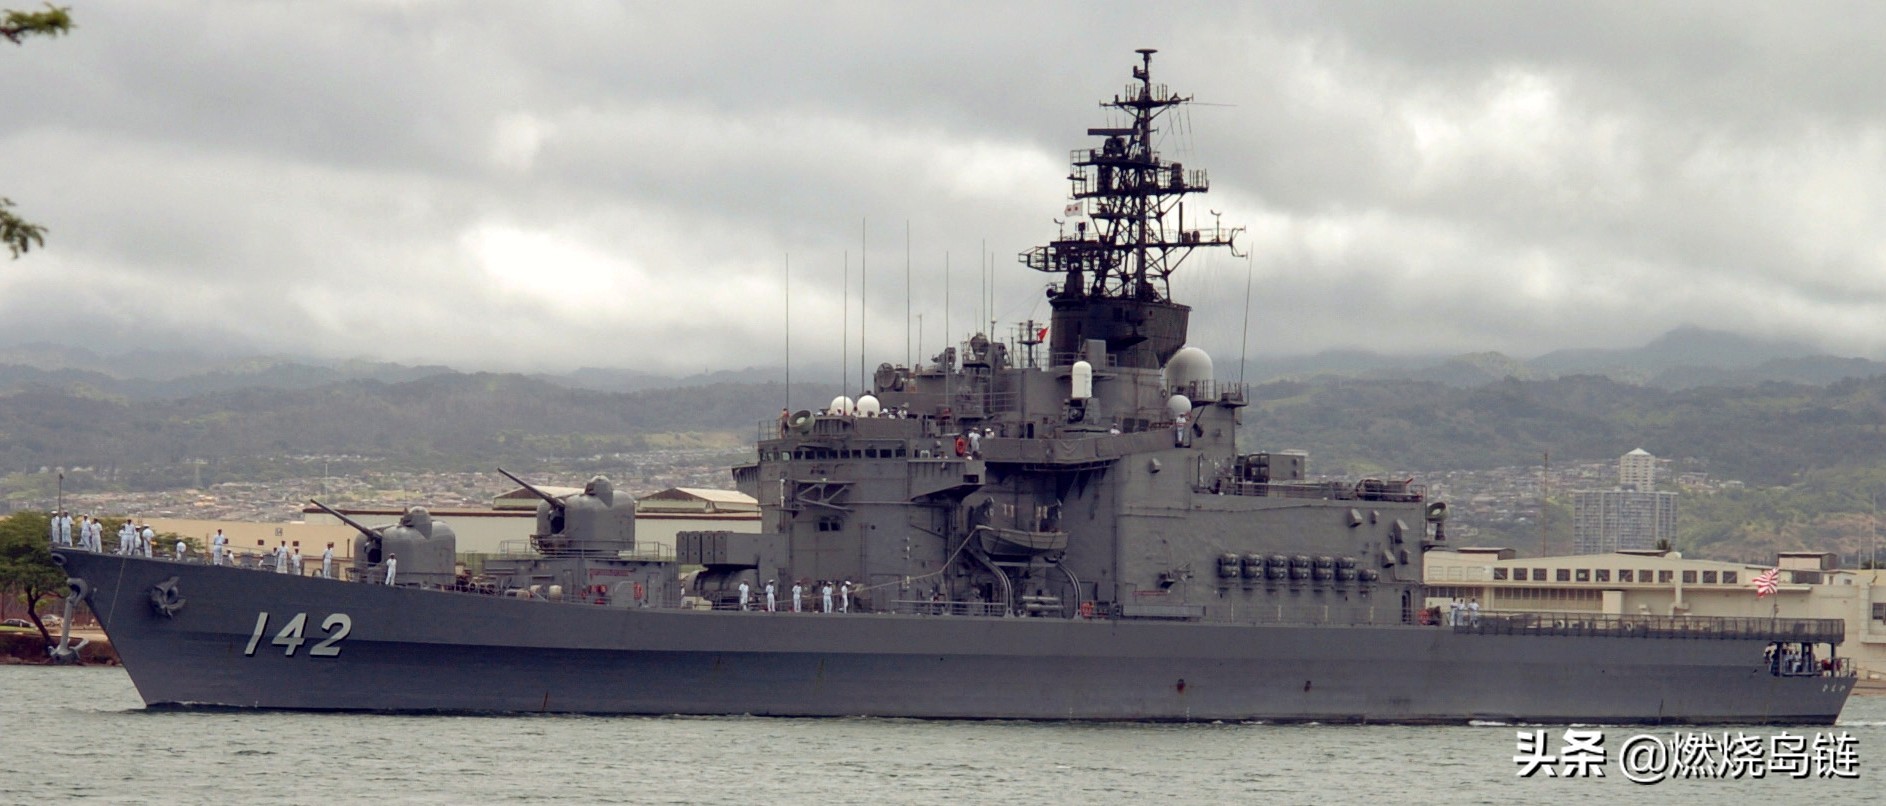 是日本海上自卫队(jmsdf)隶下的直升机驱逐舰,日本将其称之为"护卫舰"